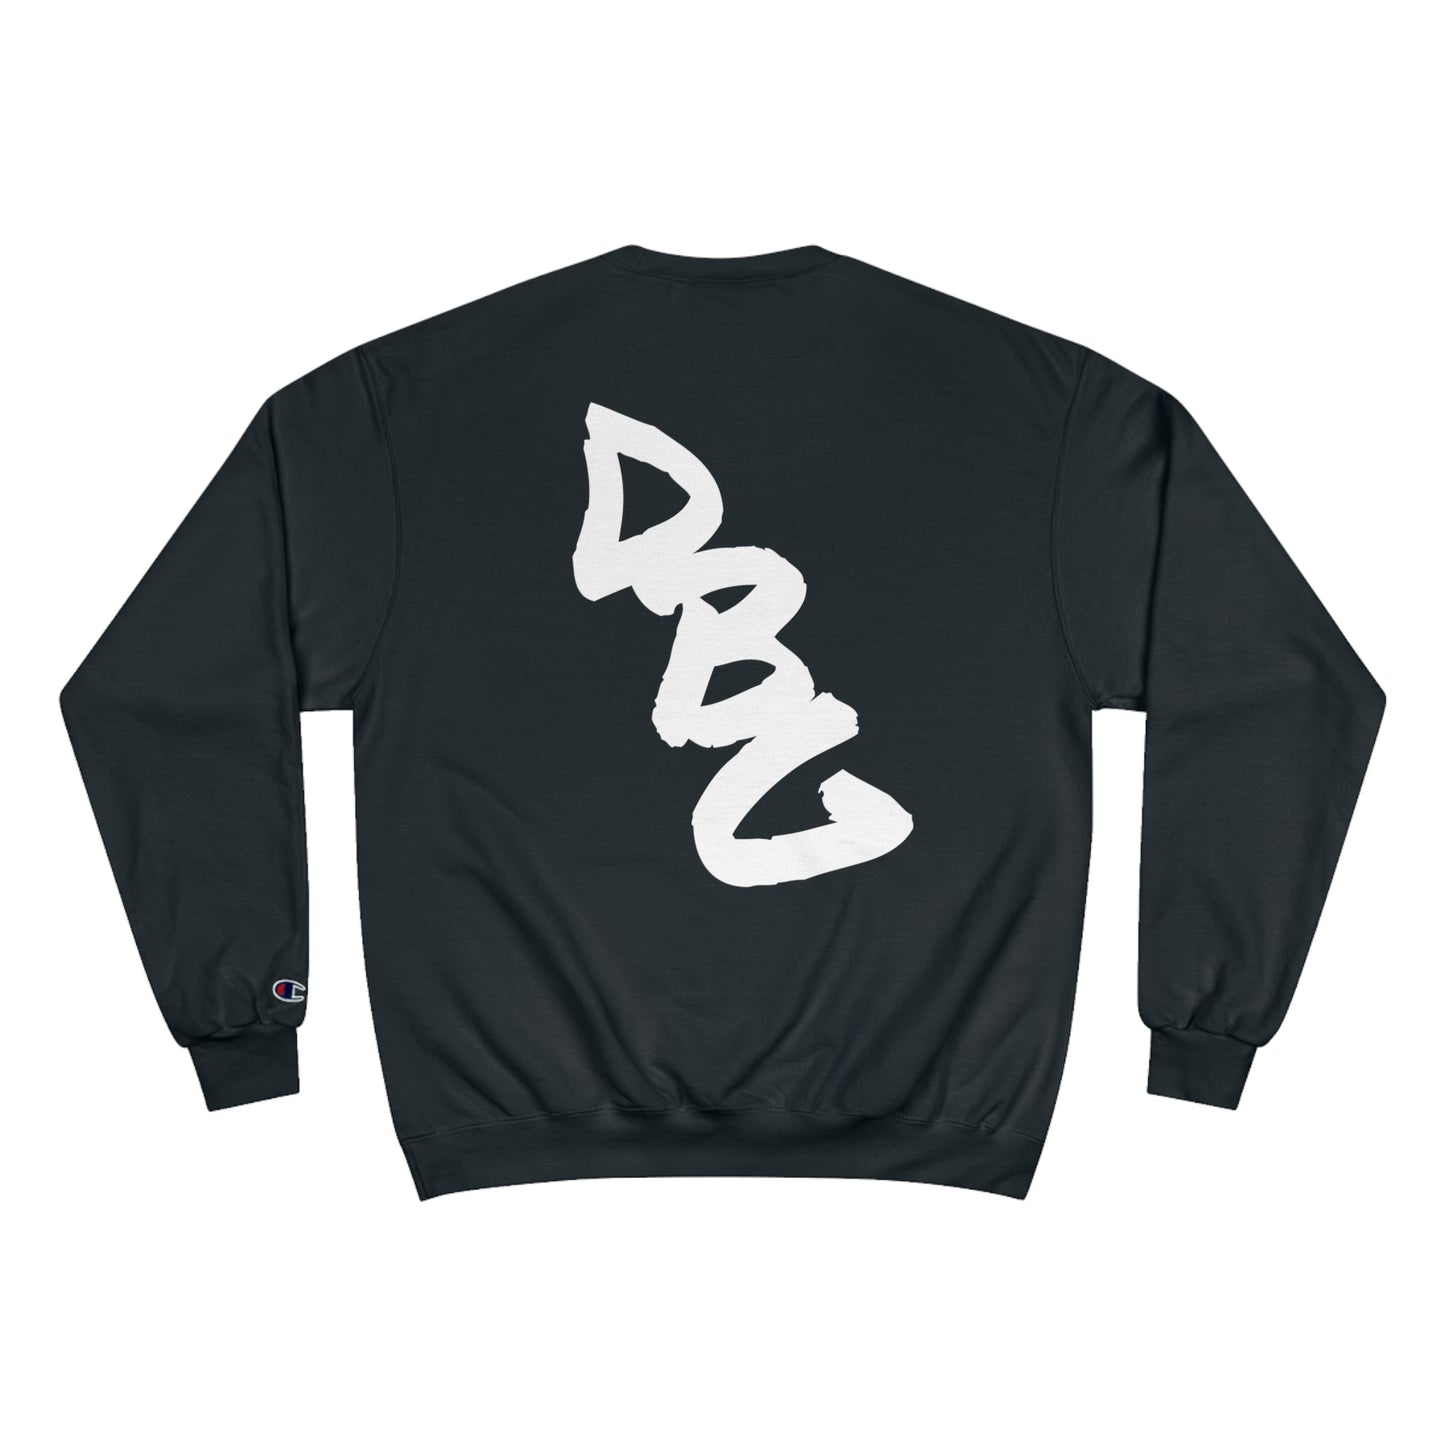 DBG/Champion Essential Sweatshirt